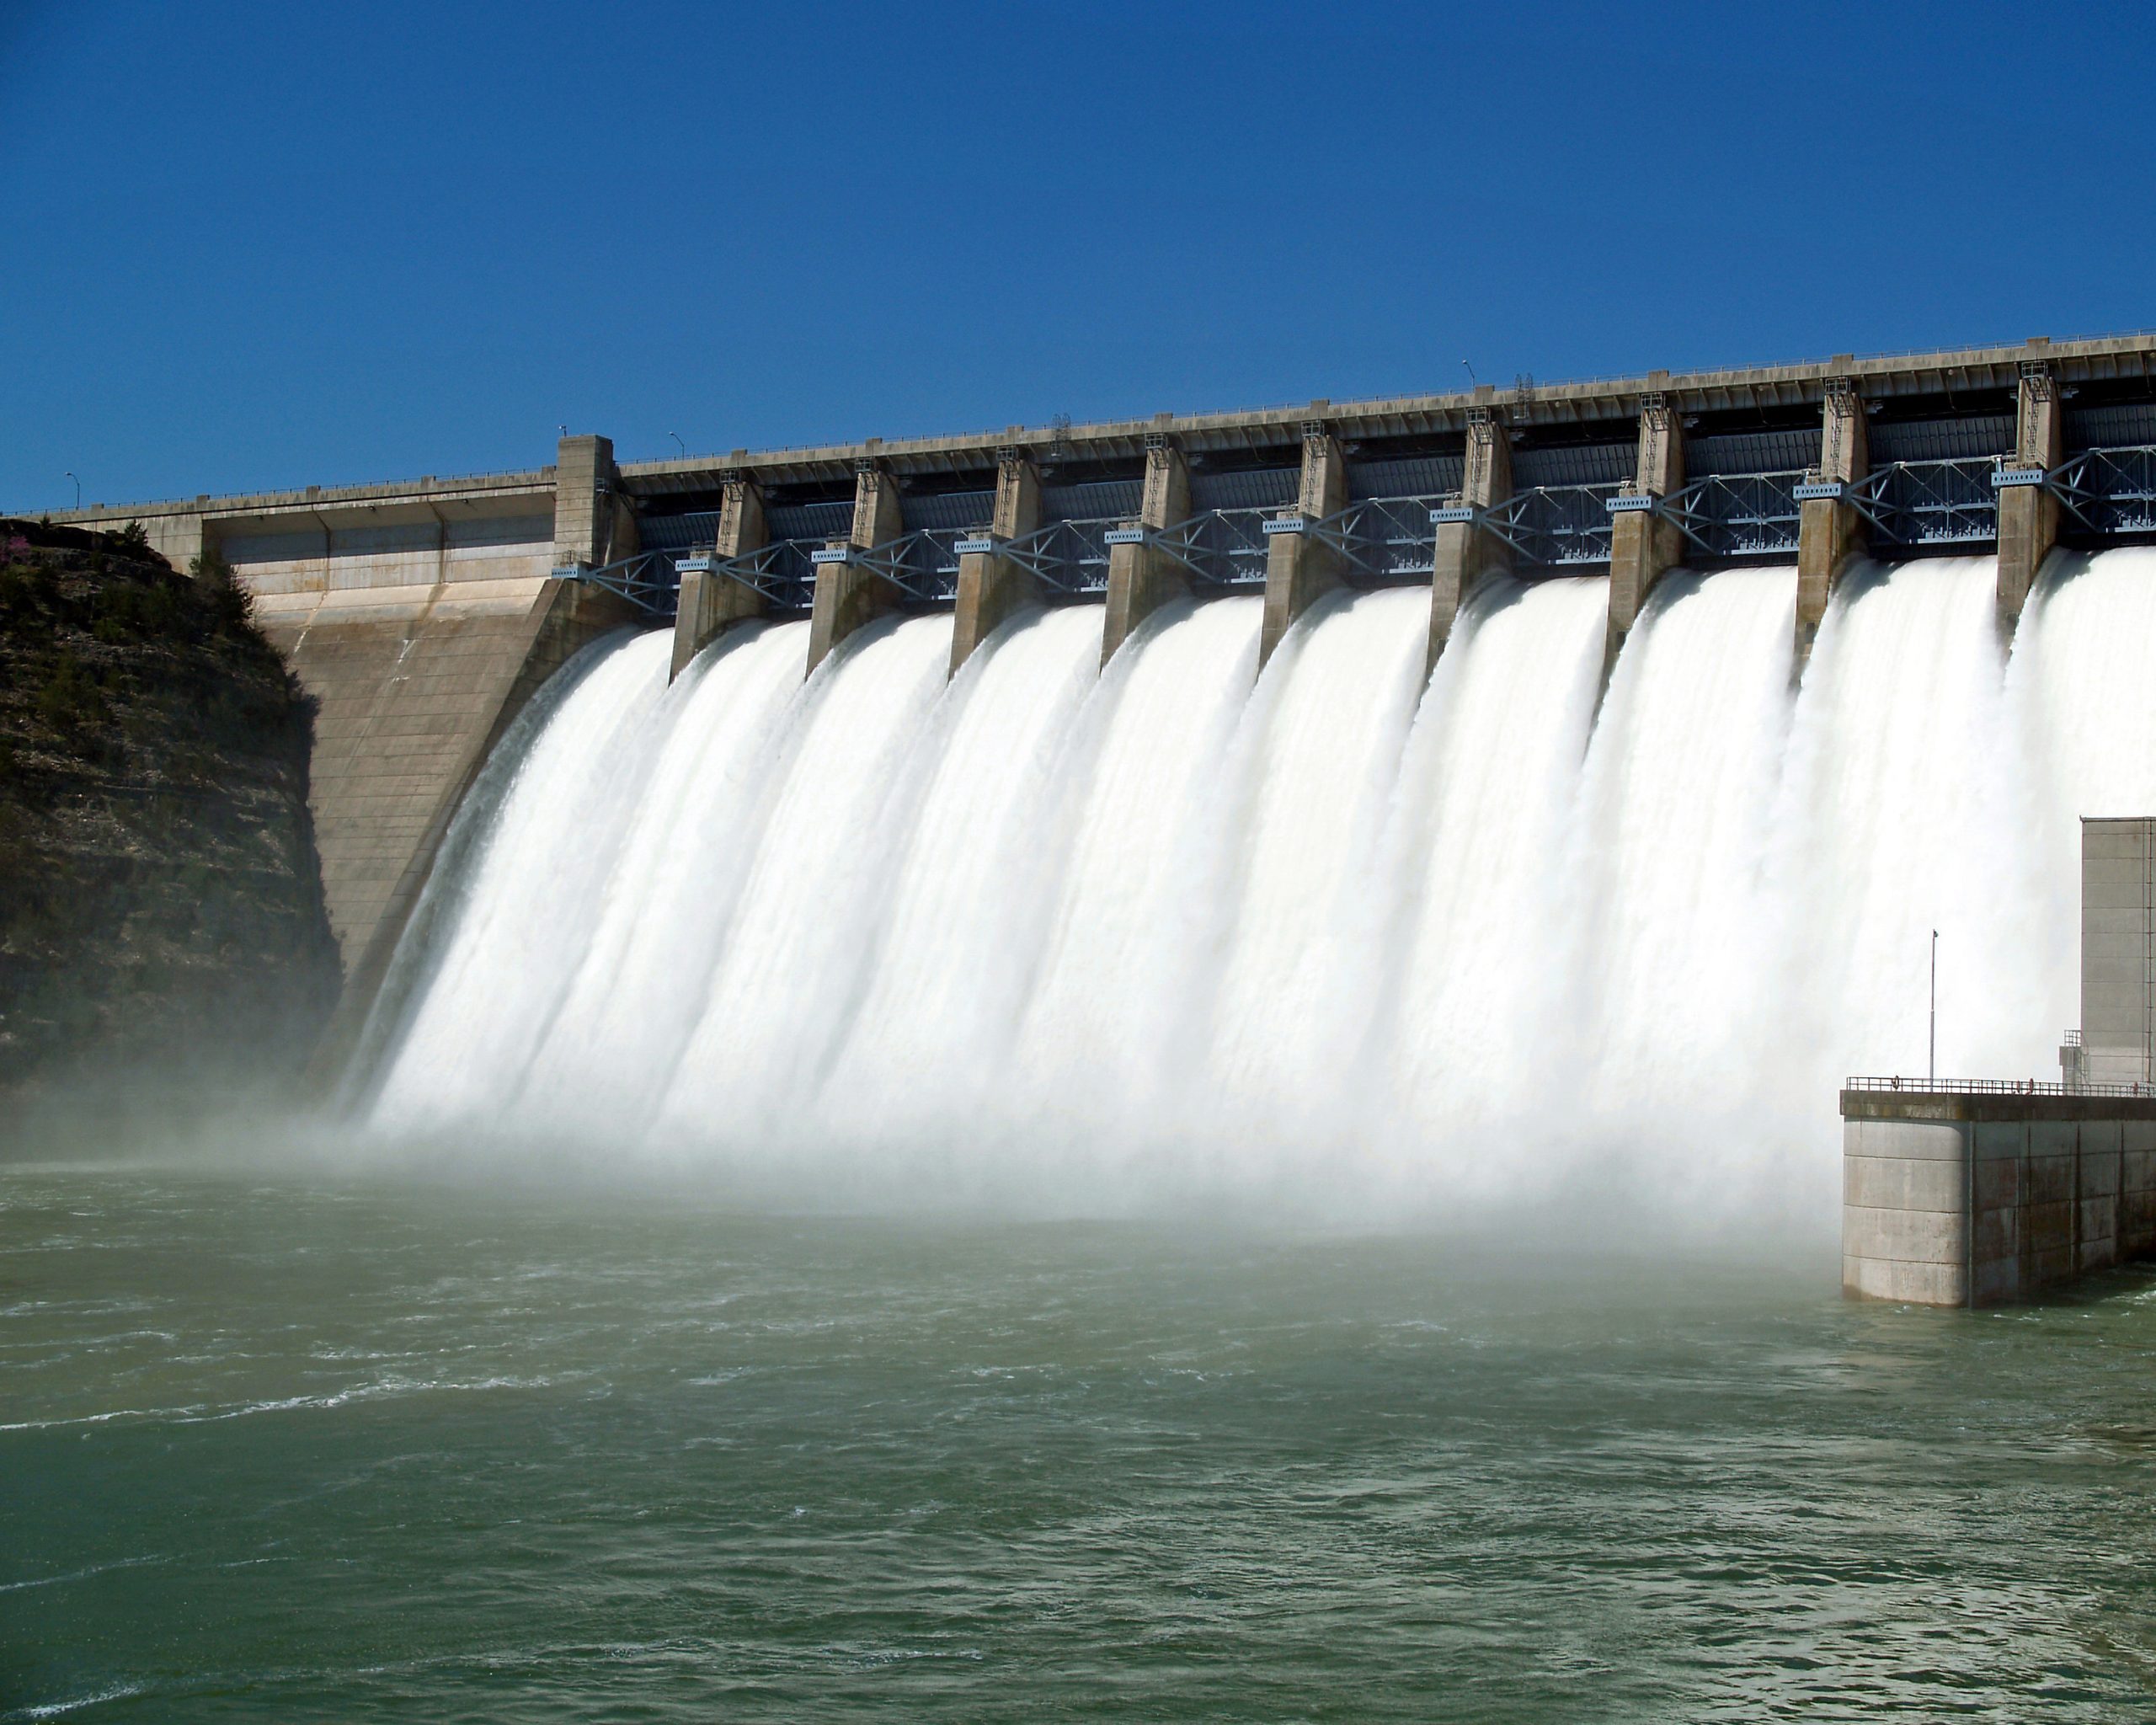 Profitul net al Hidroelectrica a crescut anul trecut cu 42%, la 6,33 miliarde lei